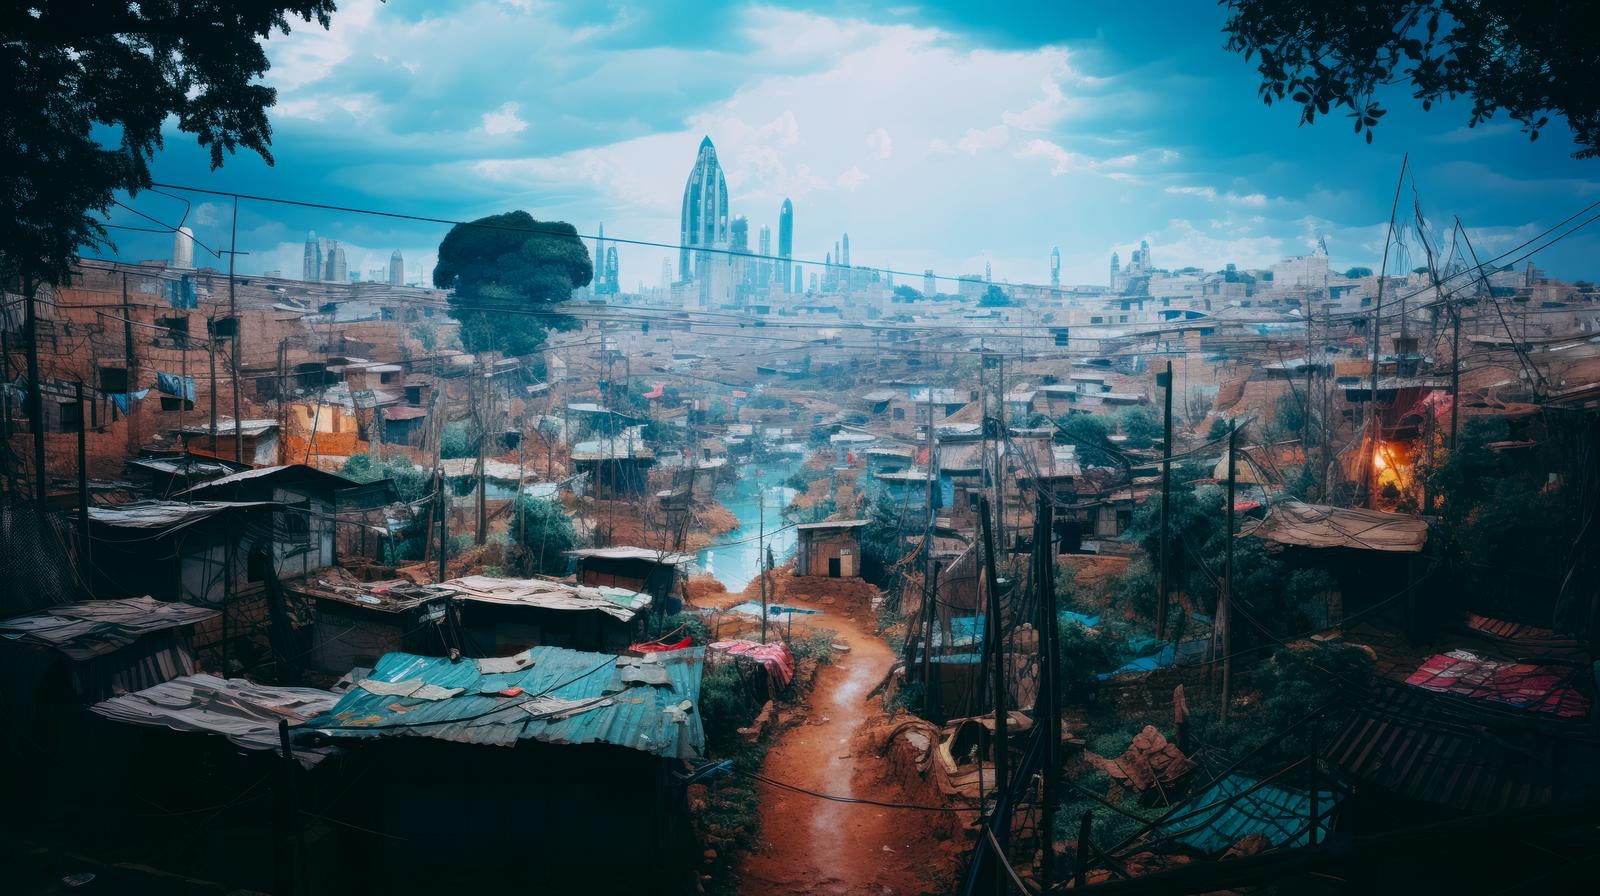 「スラム街の様子」の写真